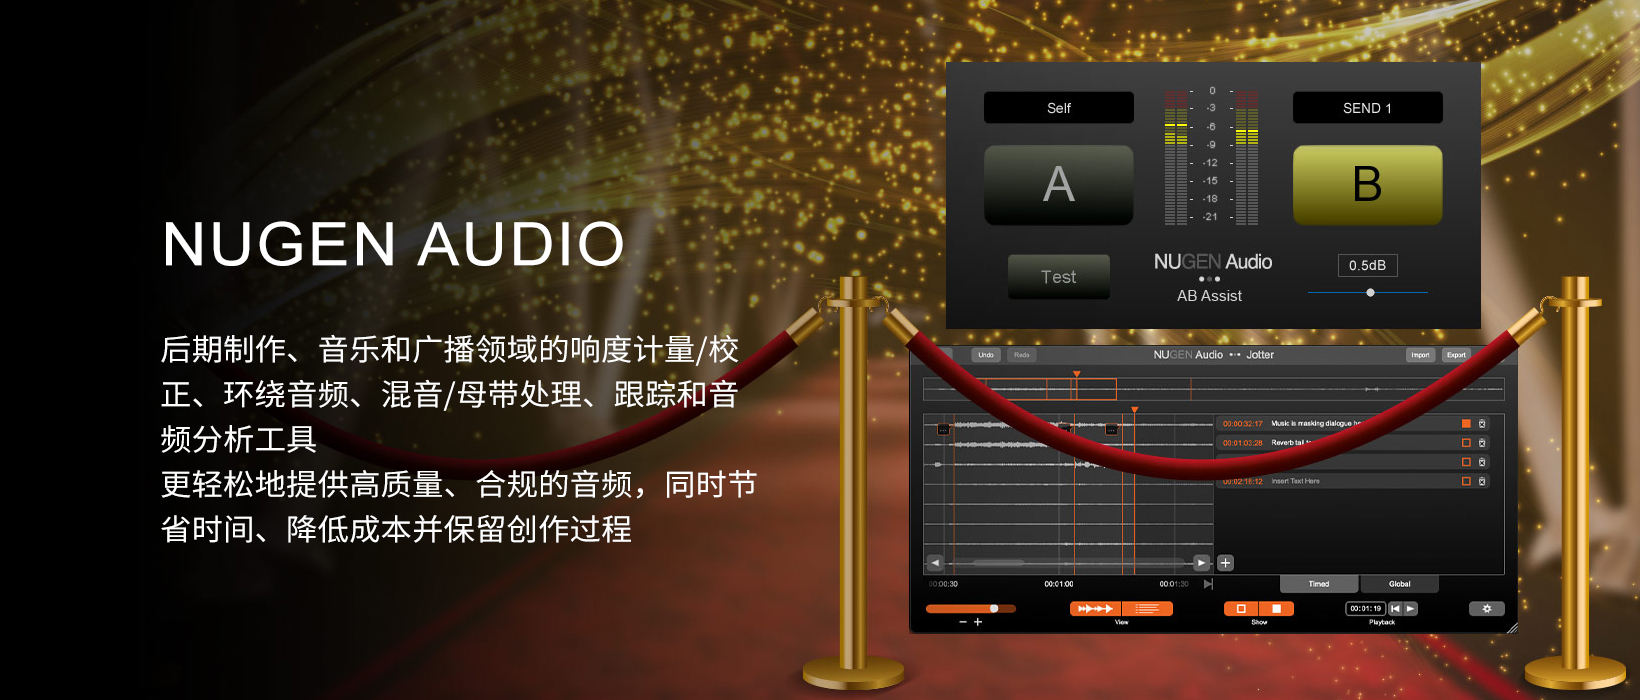 【音频处理和分析工具】上海道宁与NUGEN Audio助力您更轻松地提供高质量、合规的音频